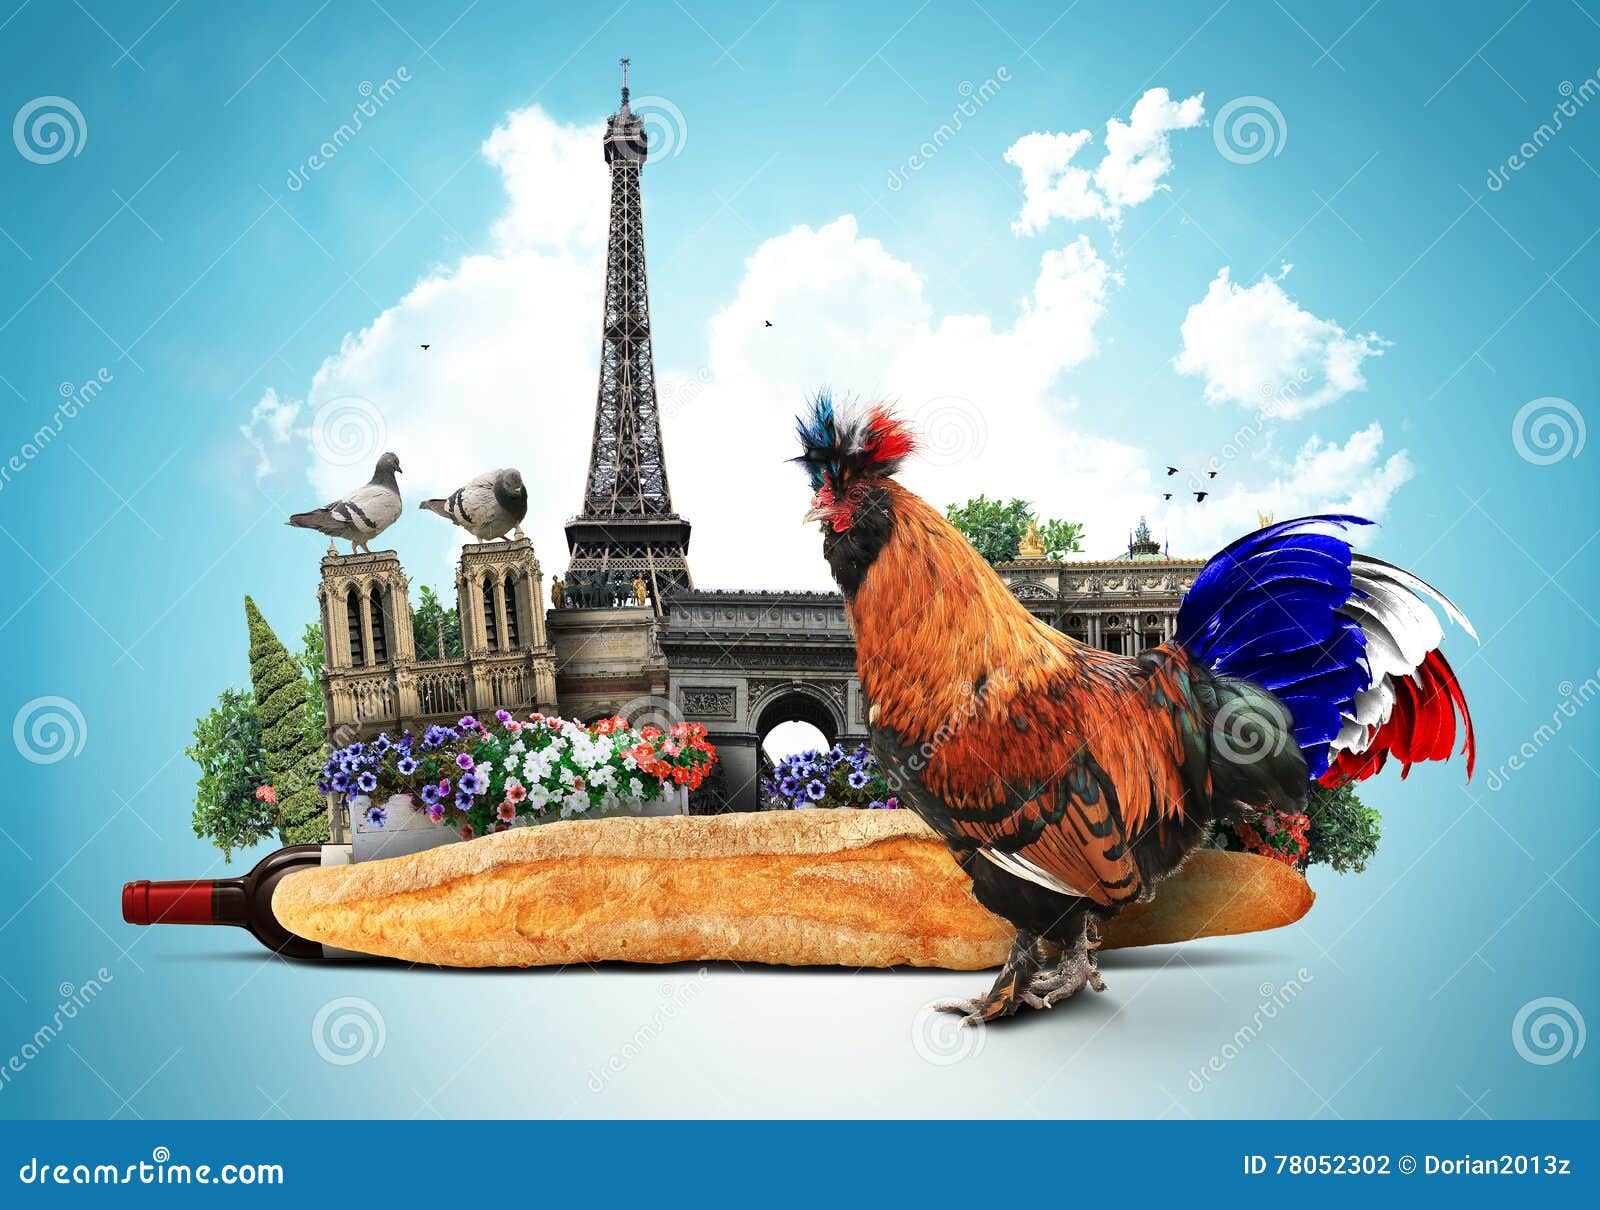 Почему петух символ. Галльский петух Франции. Галльский петух символ Франции. Le coq символ Франции. Петух национальный символ Франции.